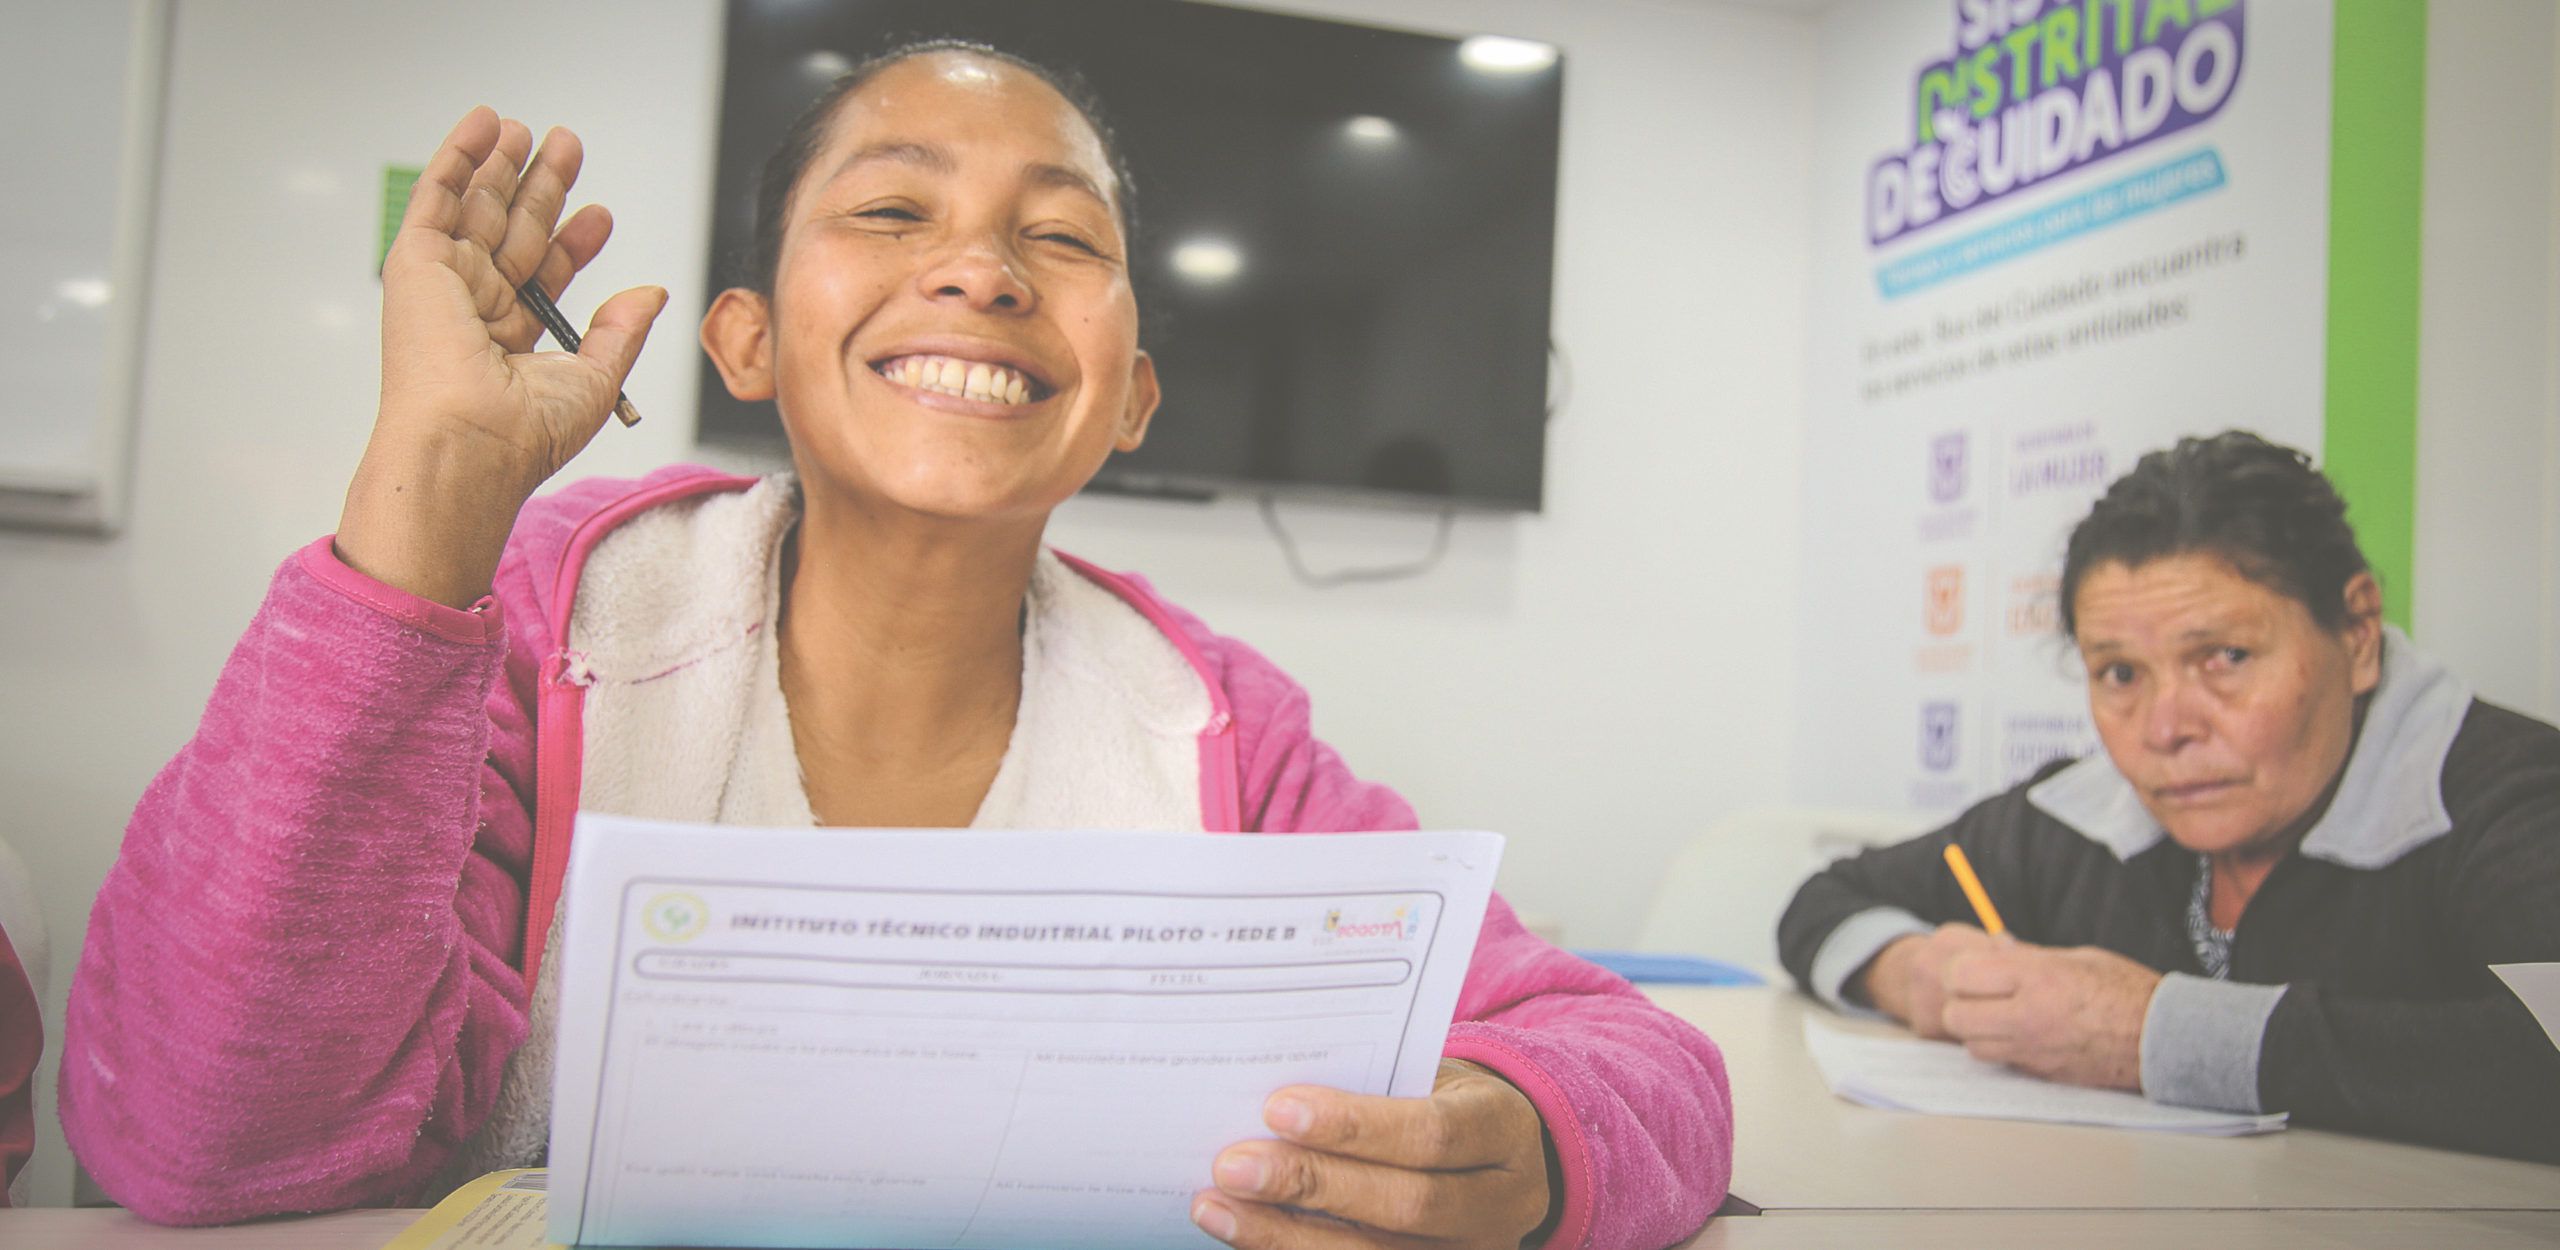 Fürsorgesystem für Care-Arbeiter:innen: Bogotá stärkt Frauen